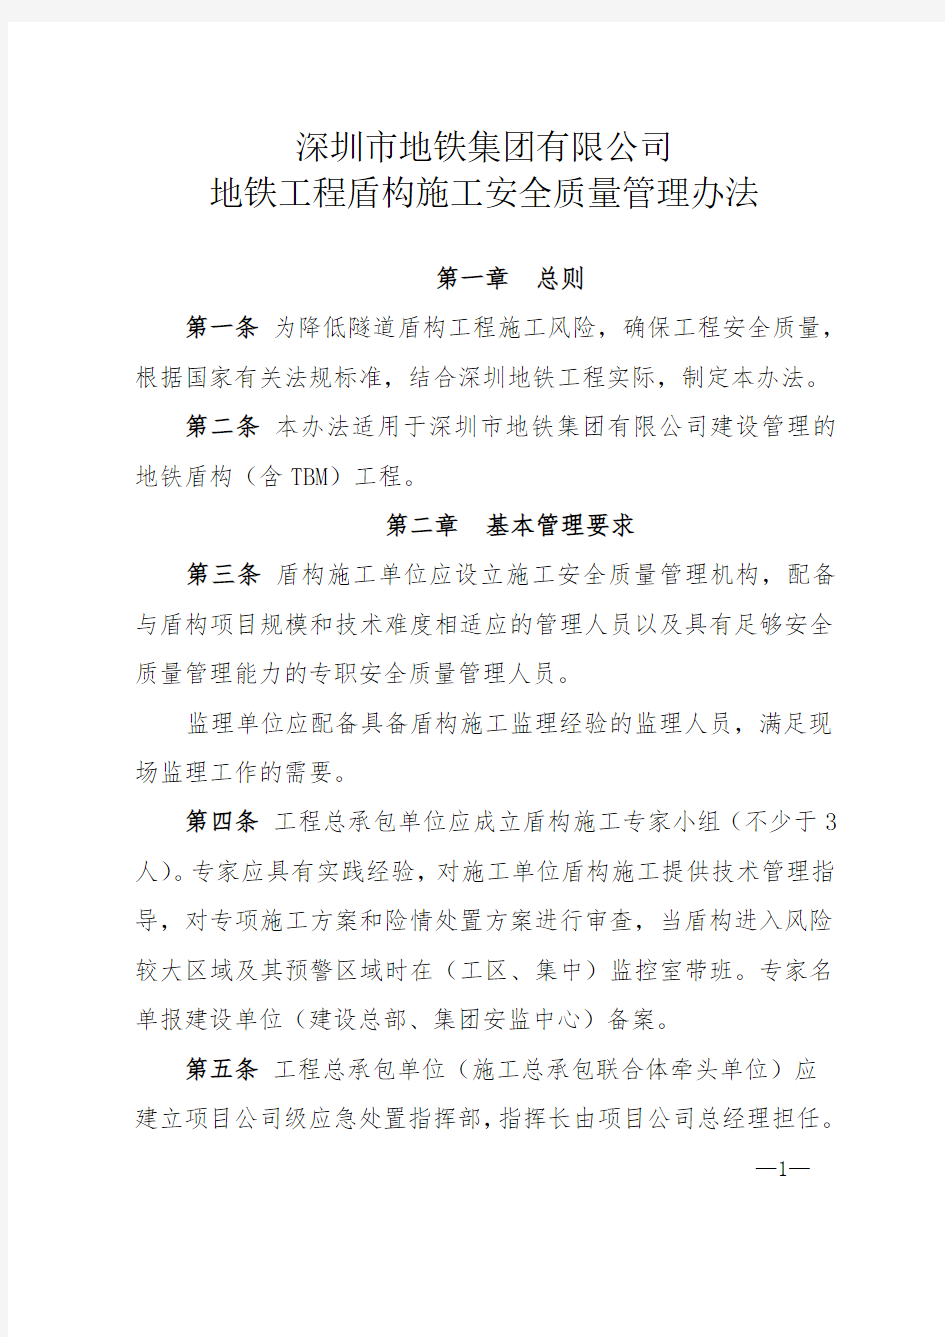 深圳地铁盾构施工安全质量管理办法(发布版)